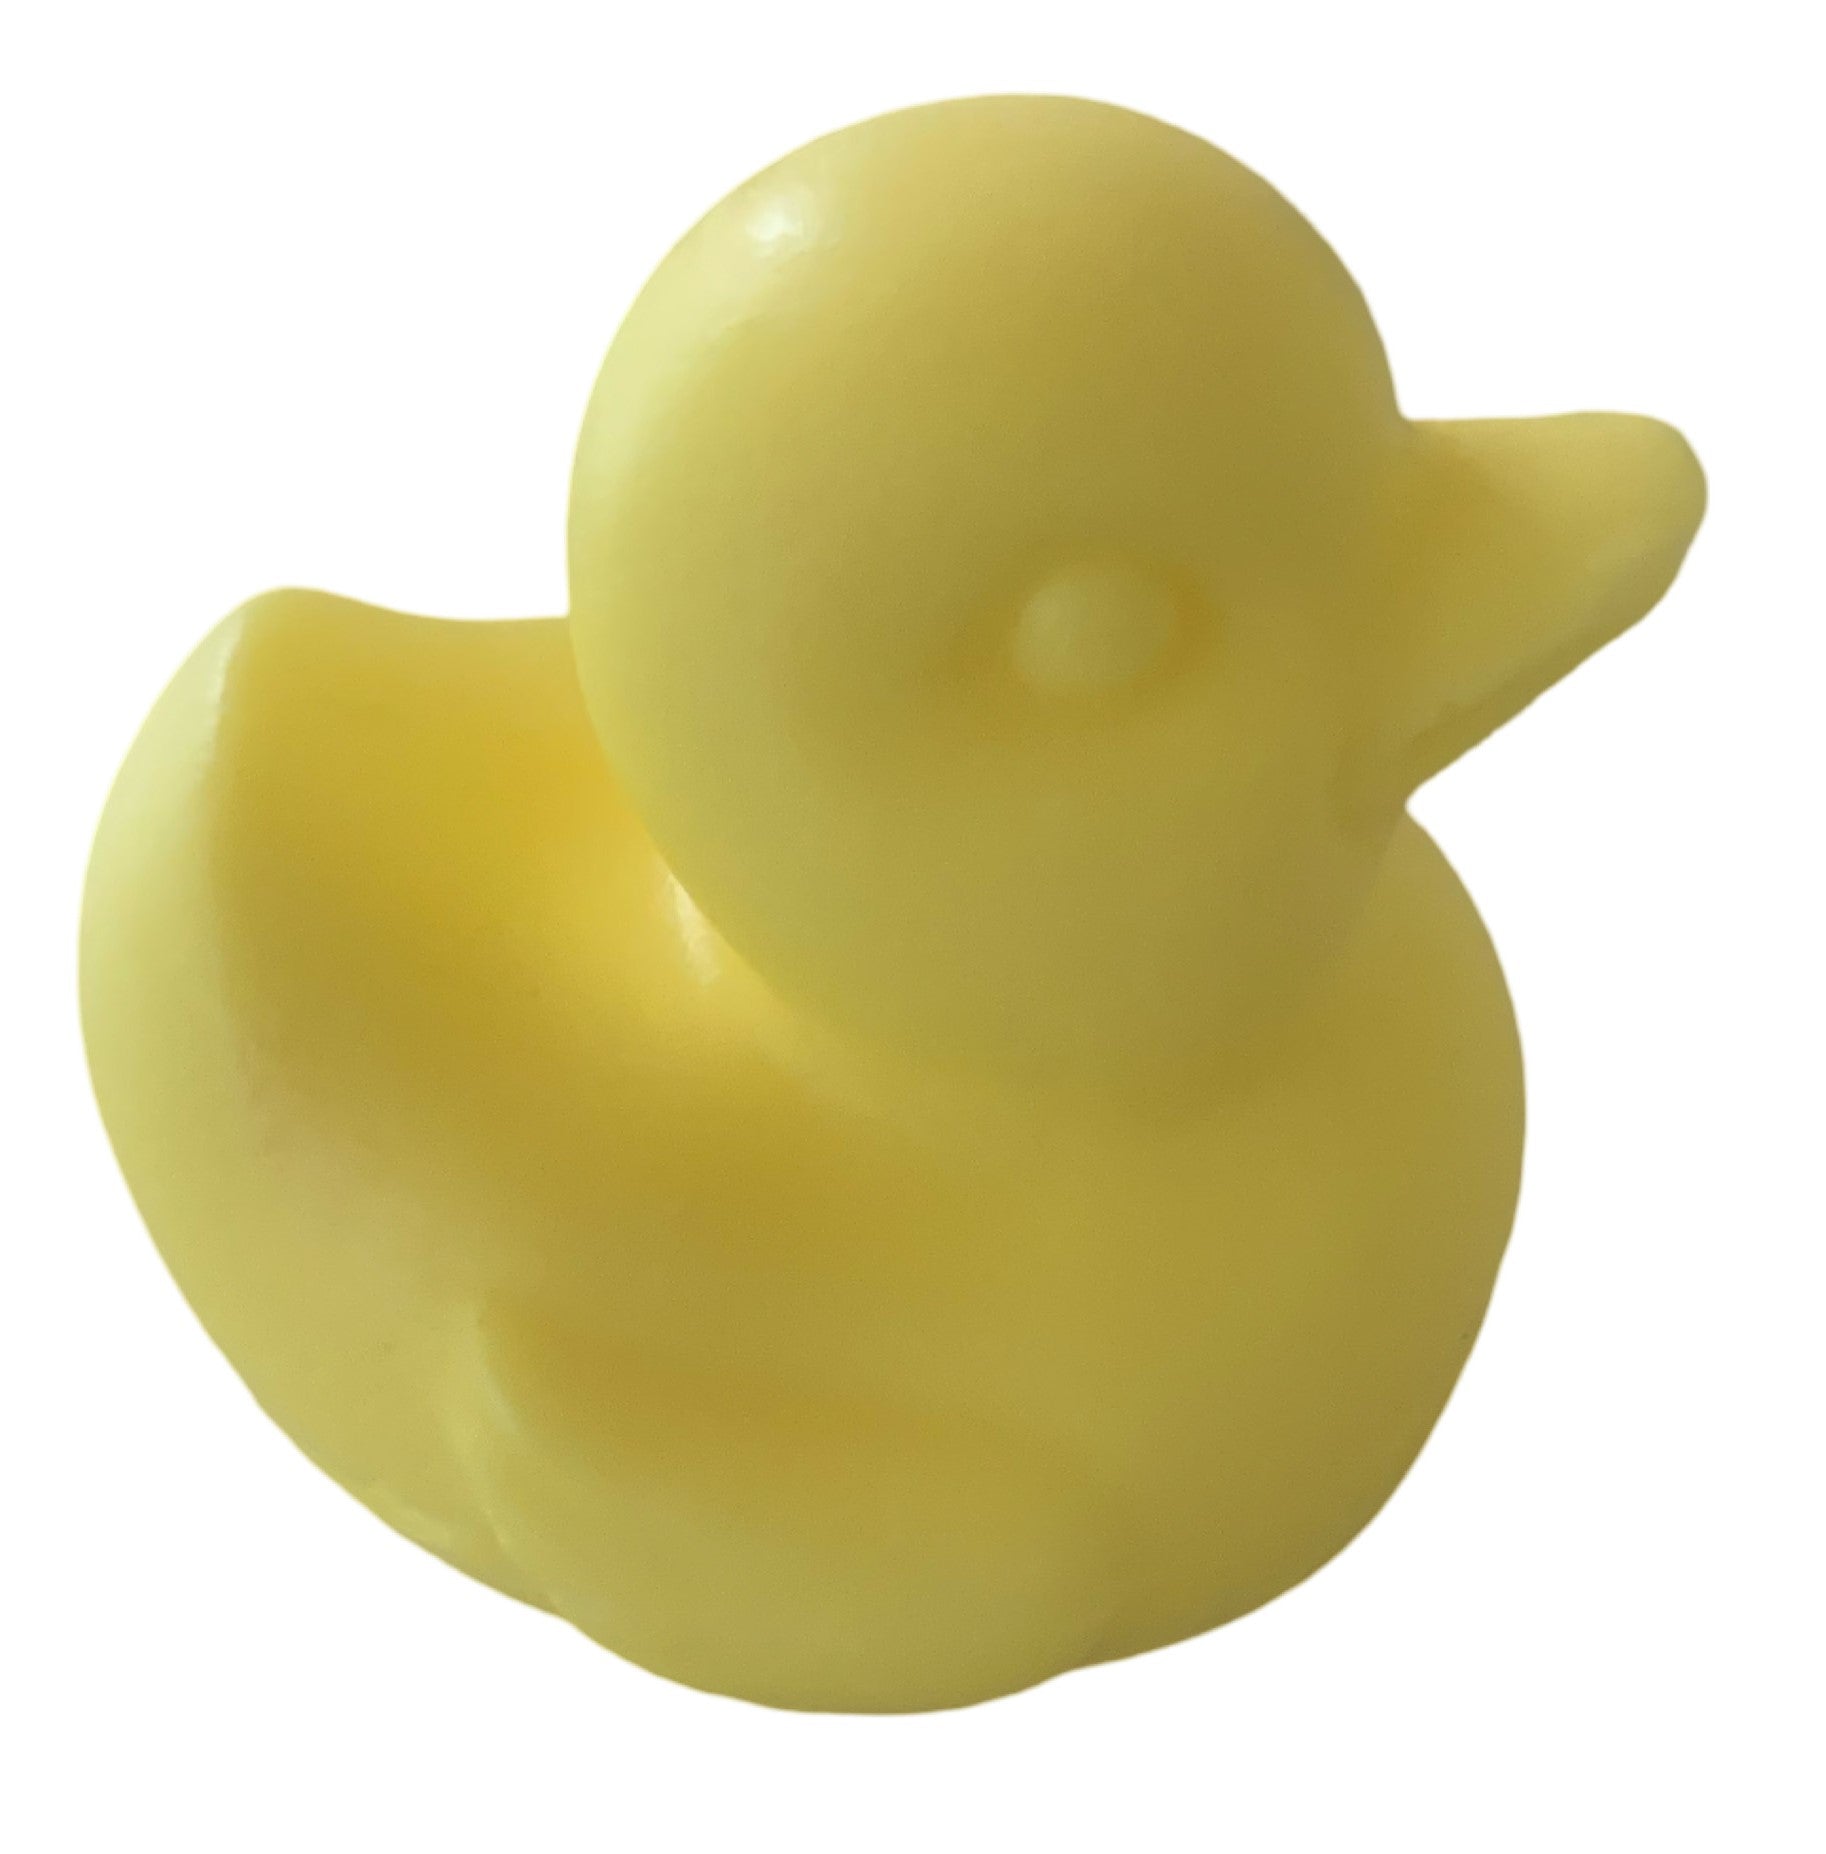 Duck soap